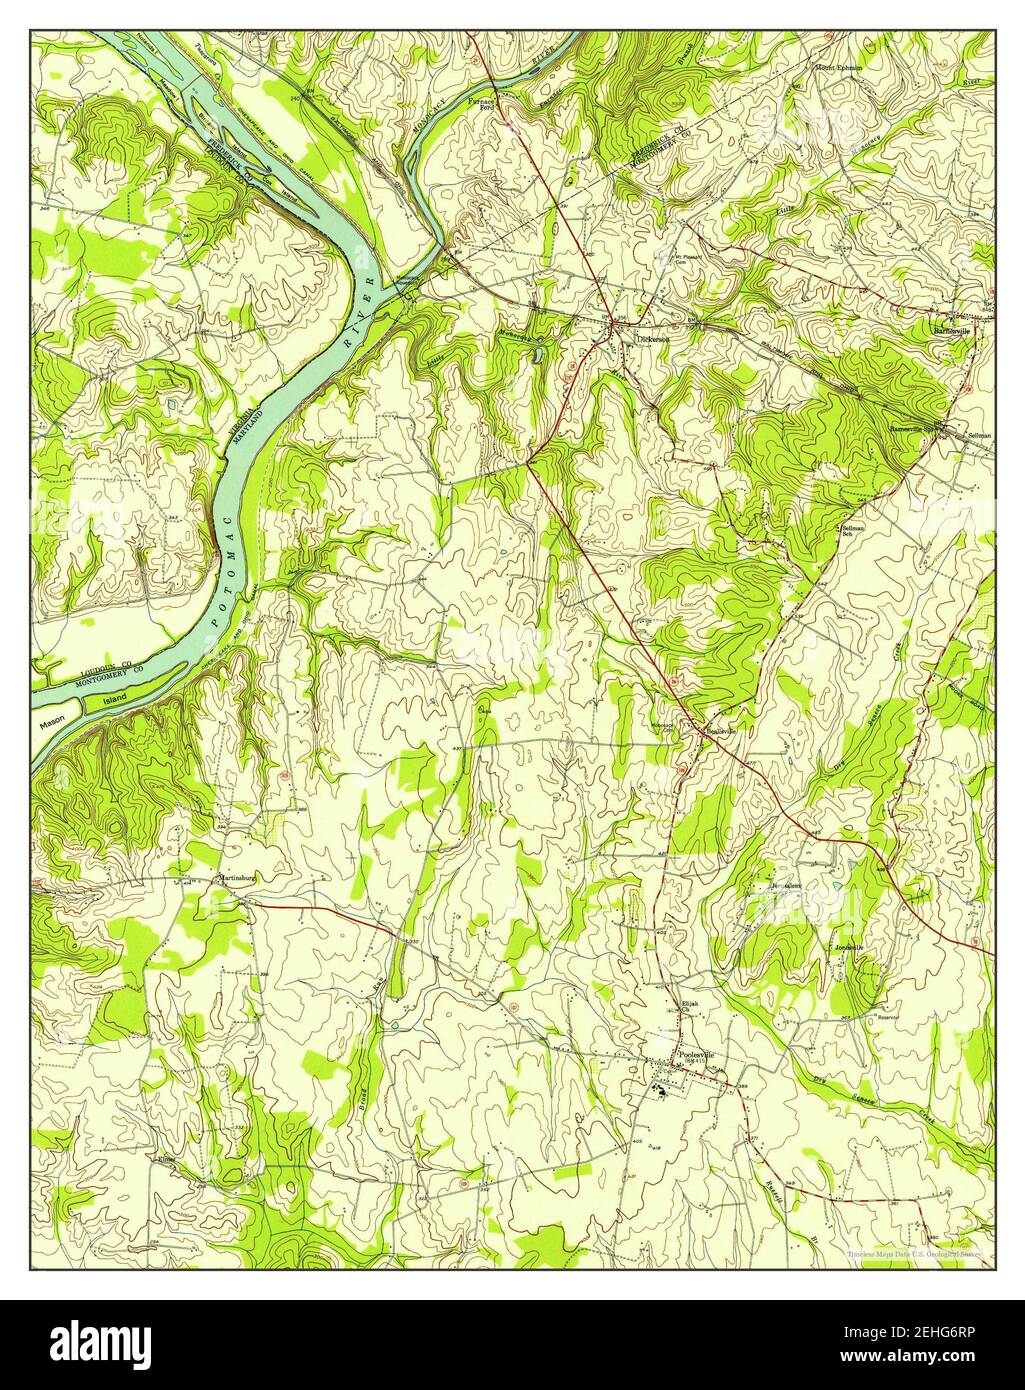 Poolesville, Maryland, Karte 1952, 1:24000, Vereinigte Staaten von Amerika von Timeless Maps, Daten U.S. Geological Survey Stockfoto